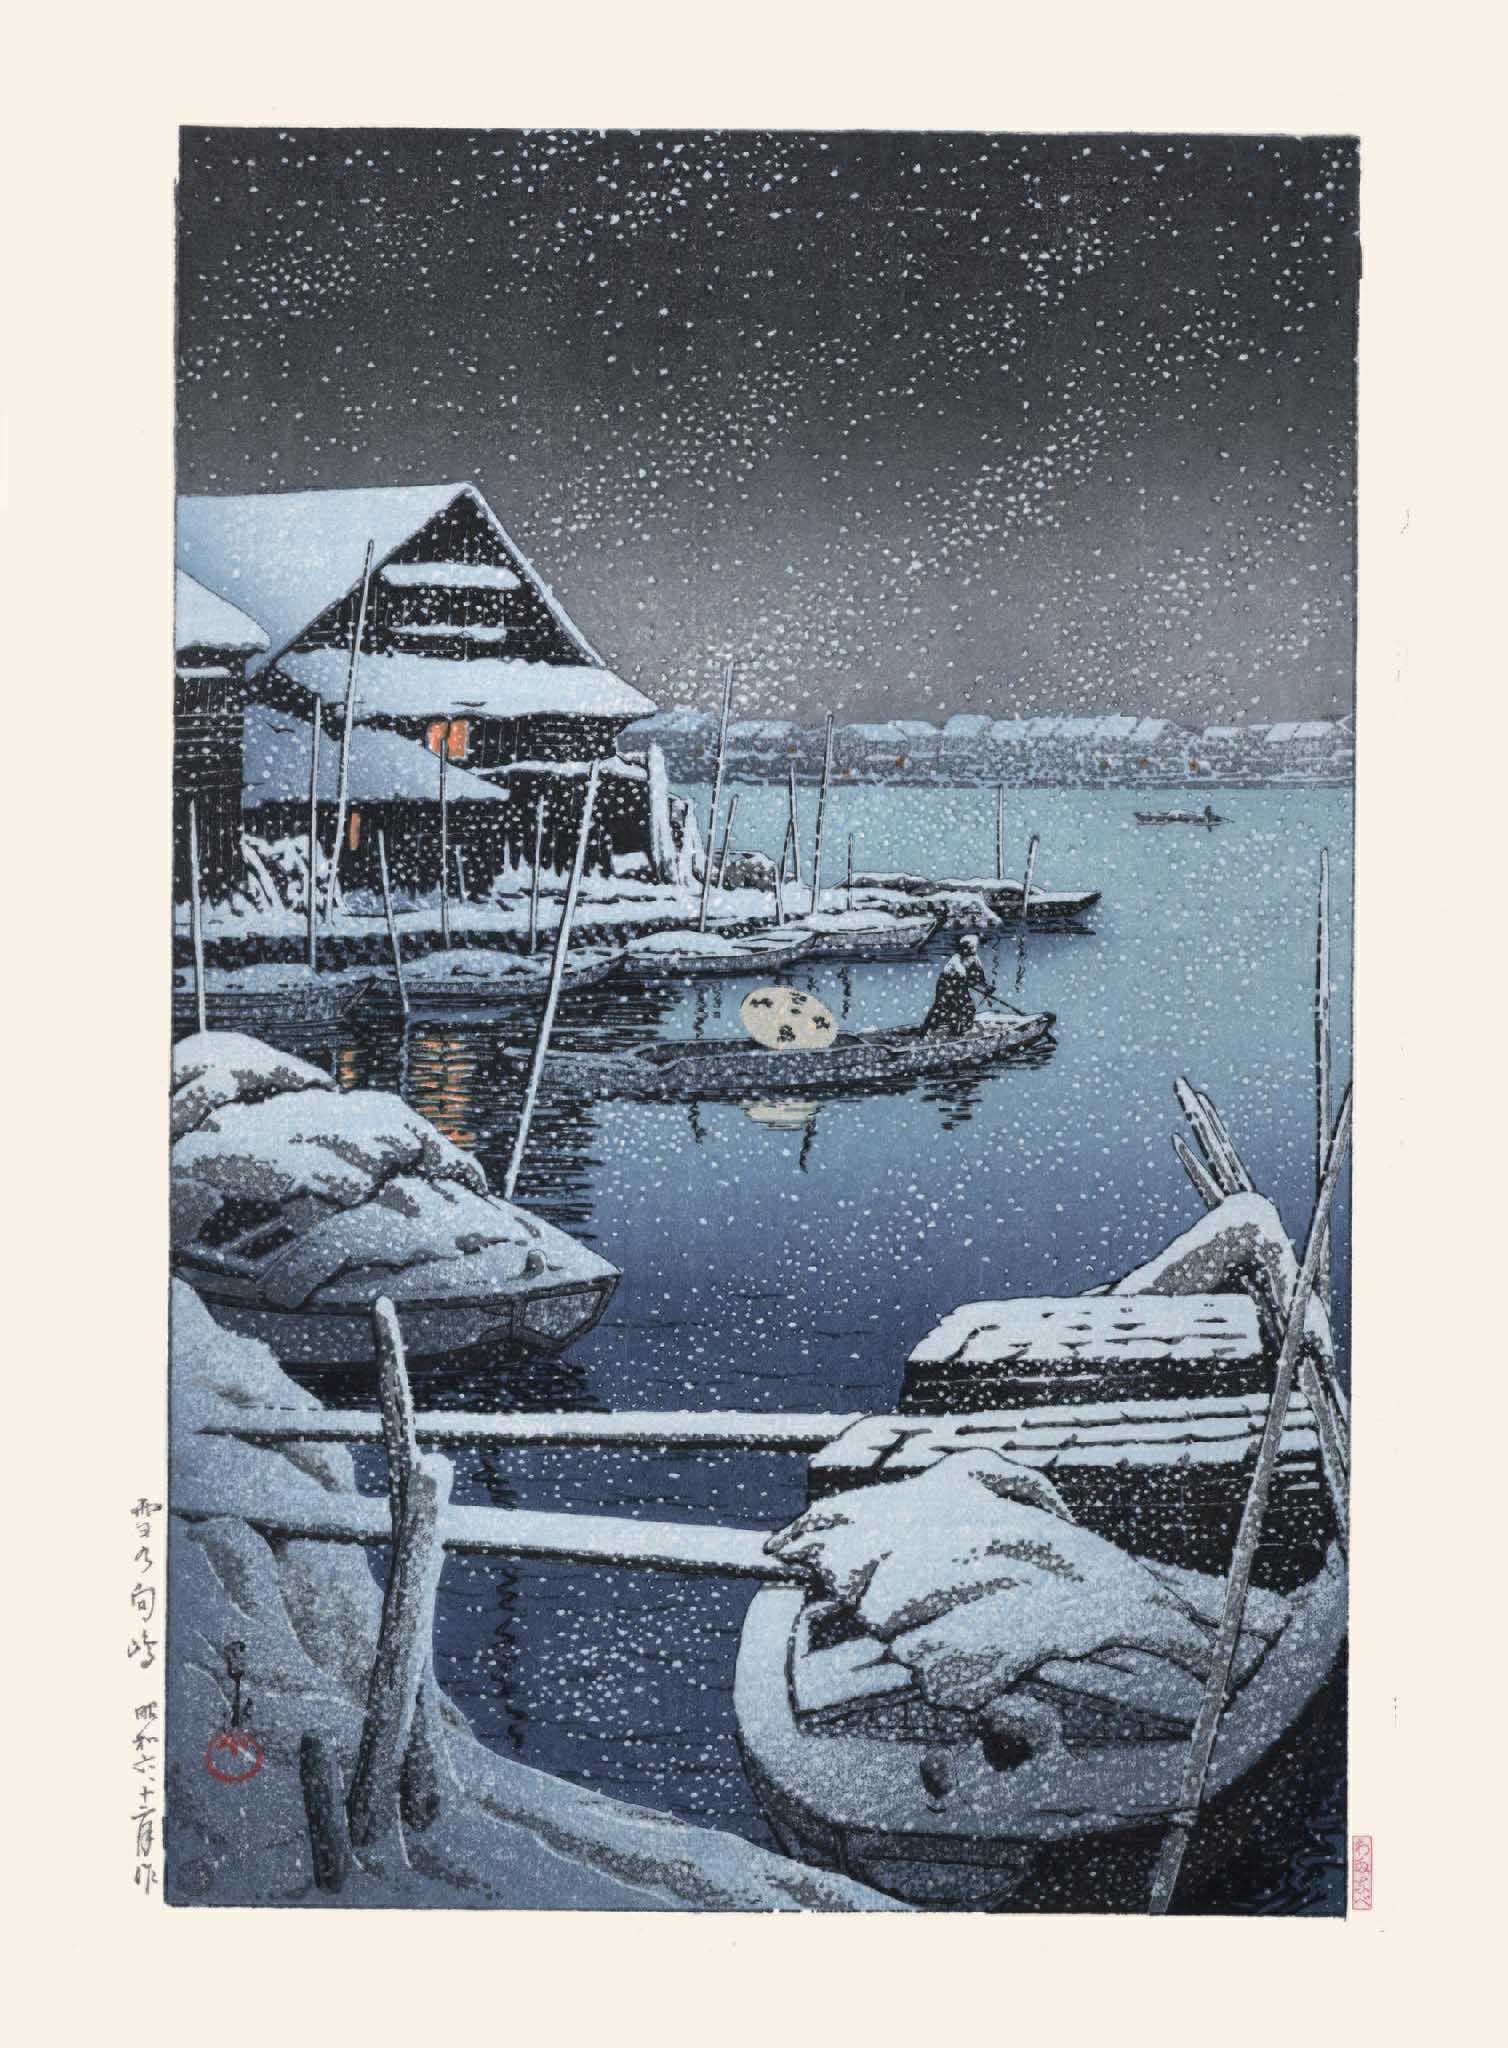 Estampe japonaise d'un paysage sous la neige, sur une rivière avec des barques en hiver, la nuit